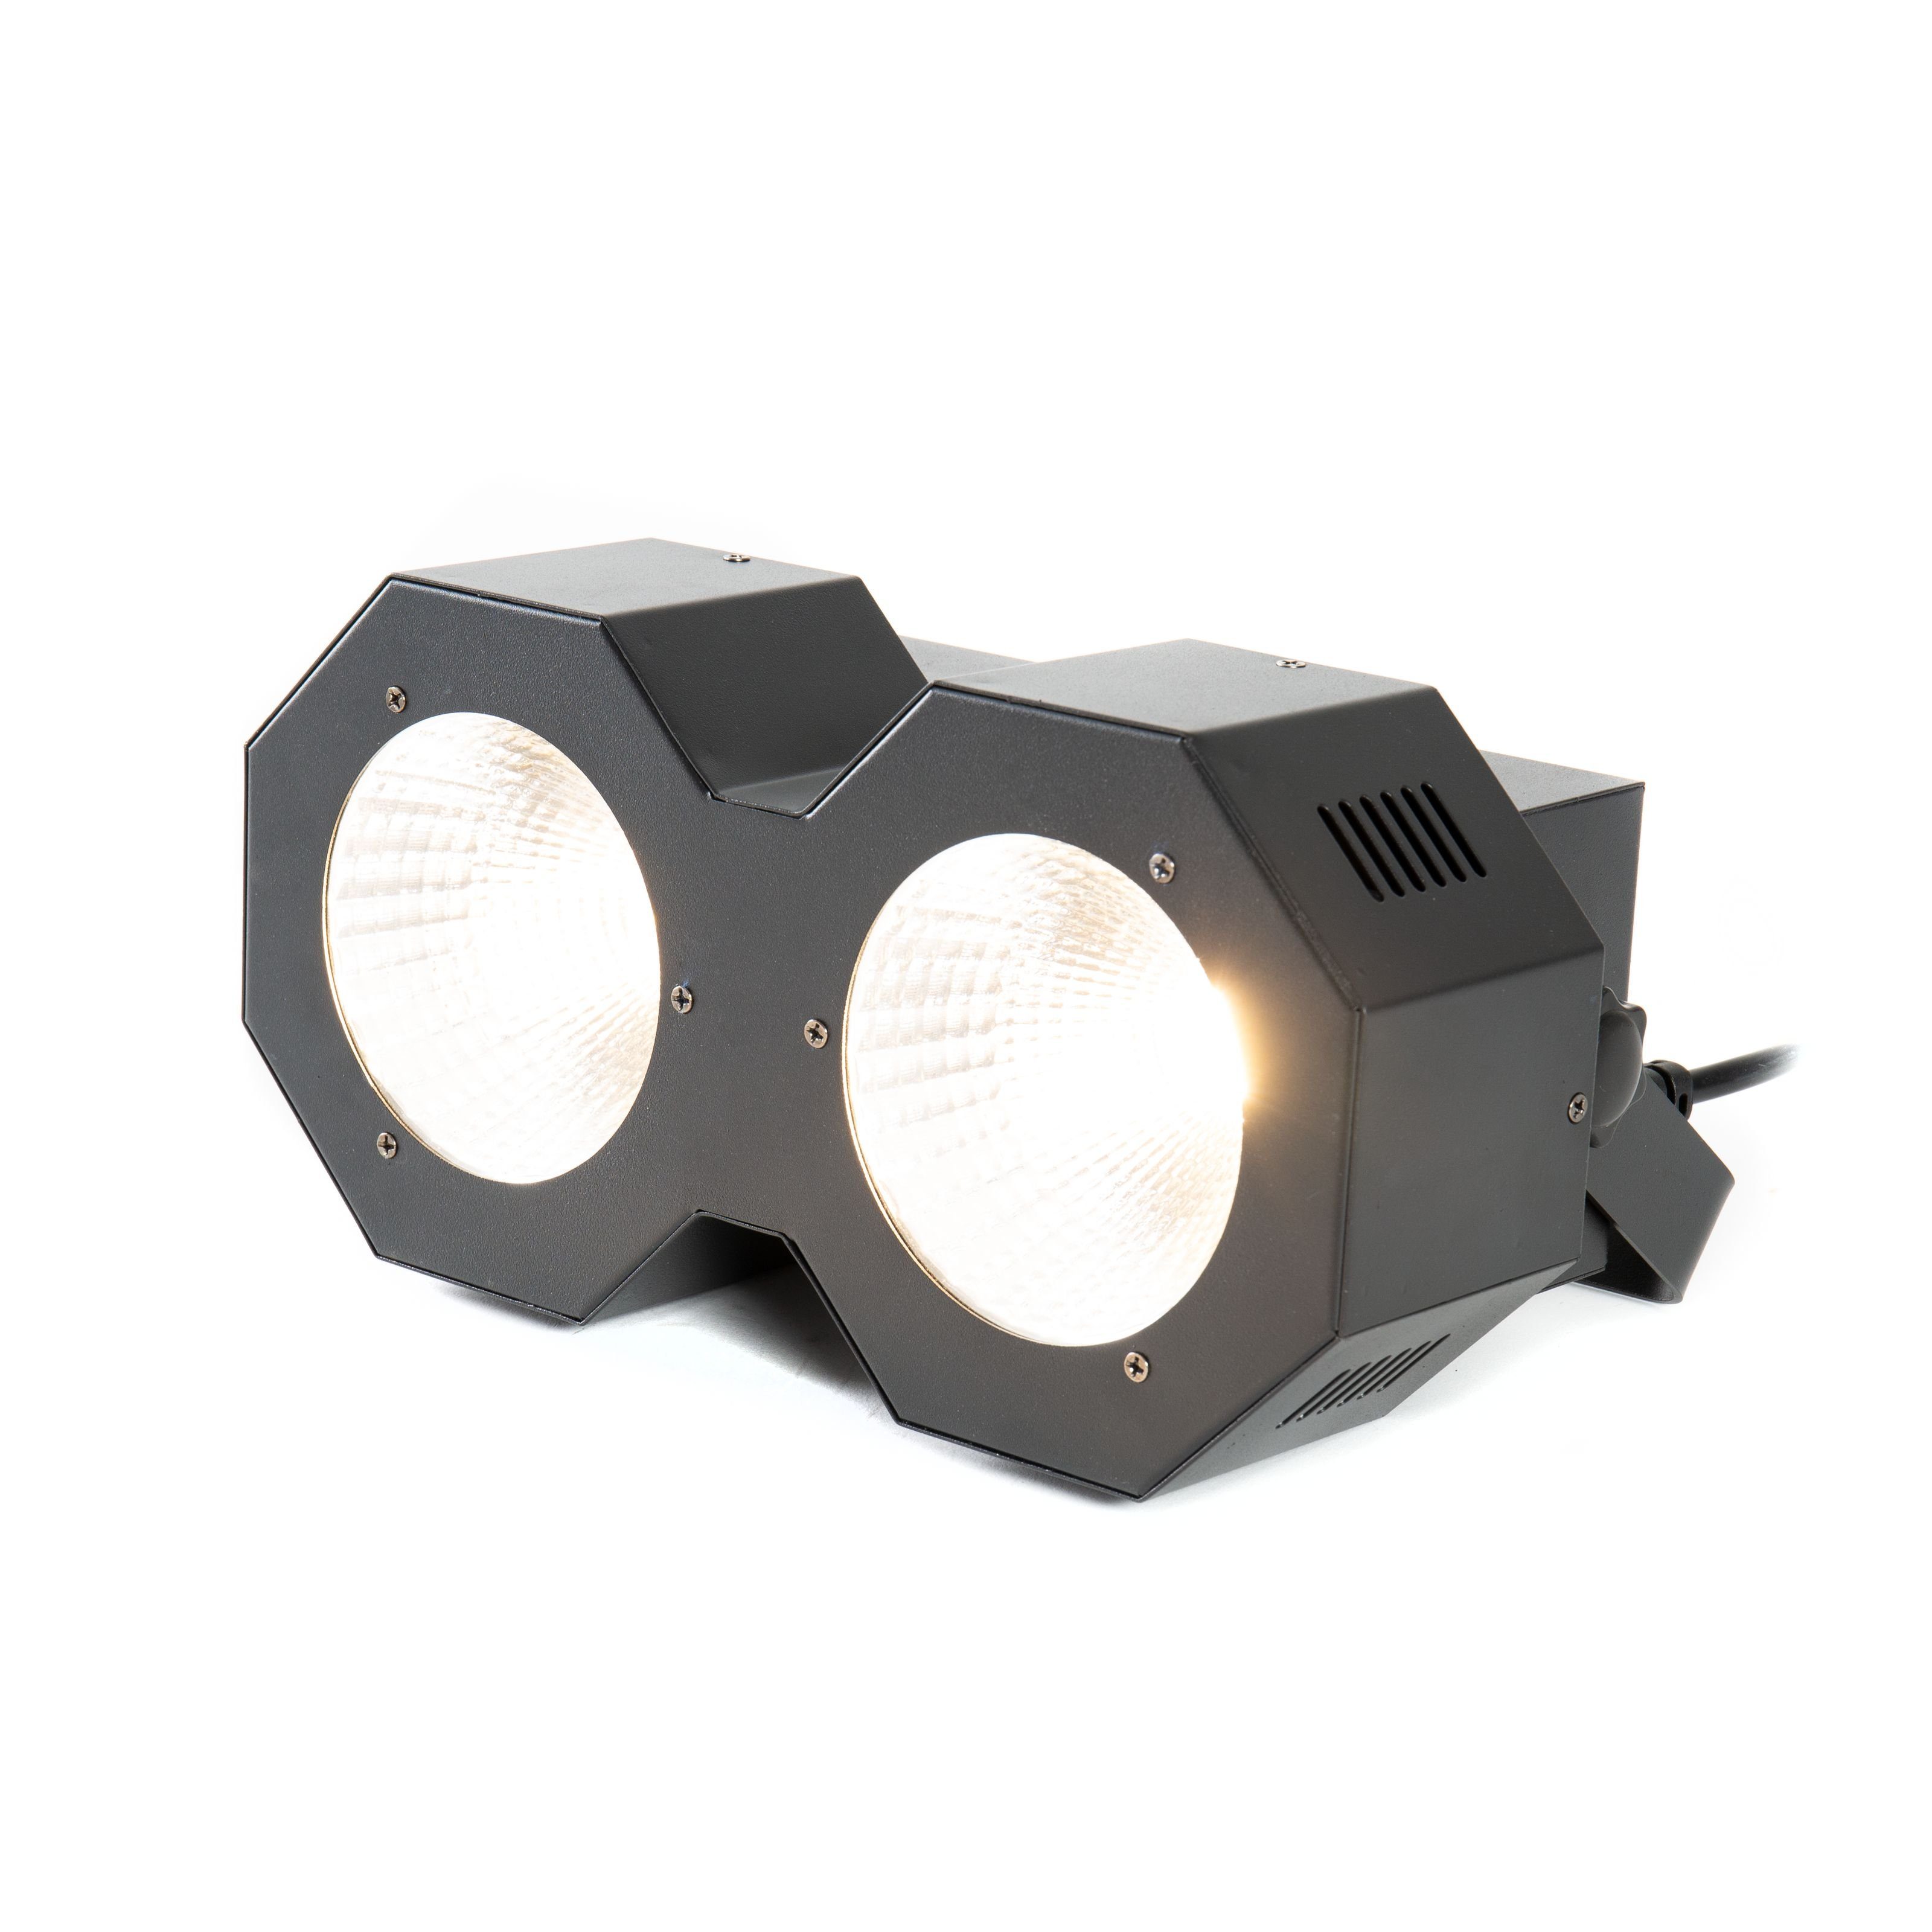 lightmaXX Discolicht, LED Blinder 2 - Blinder